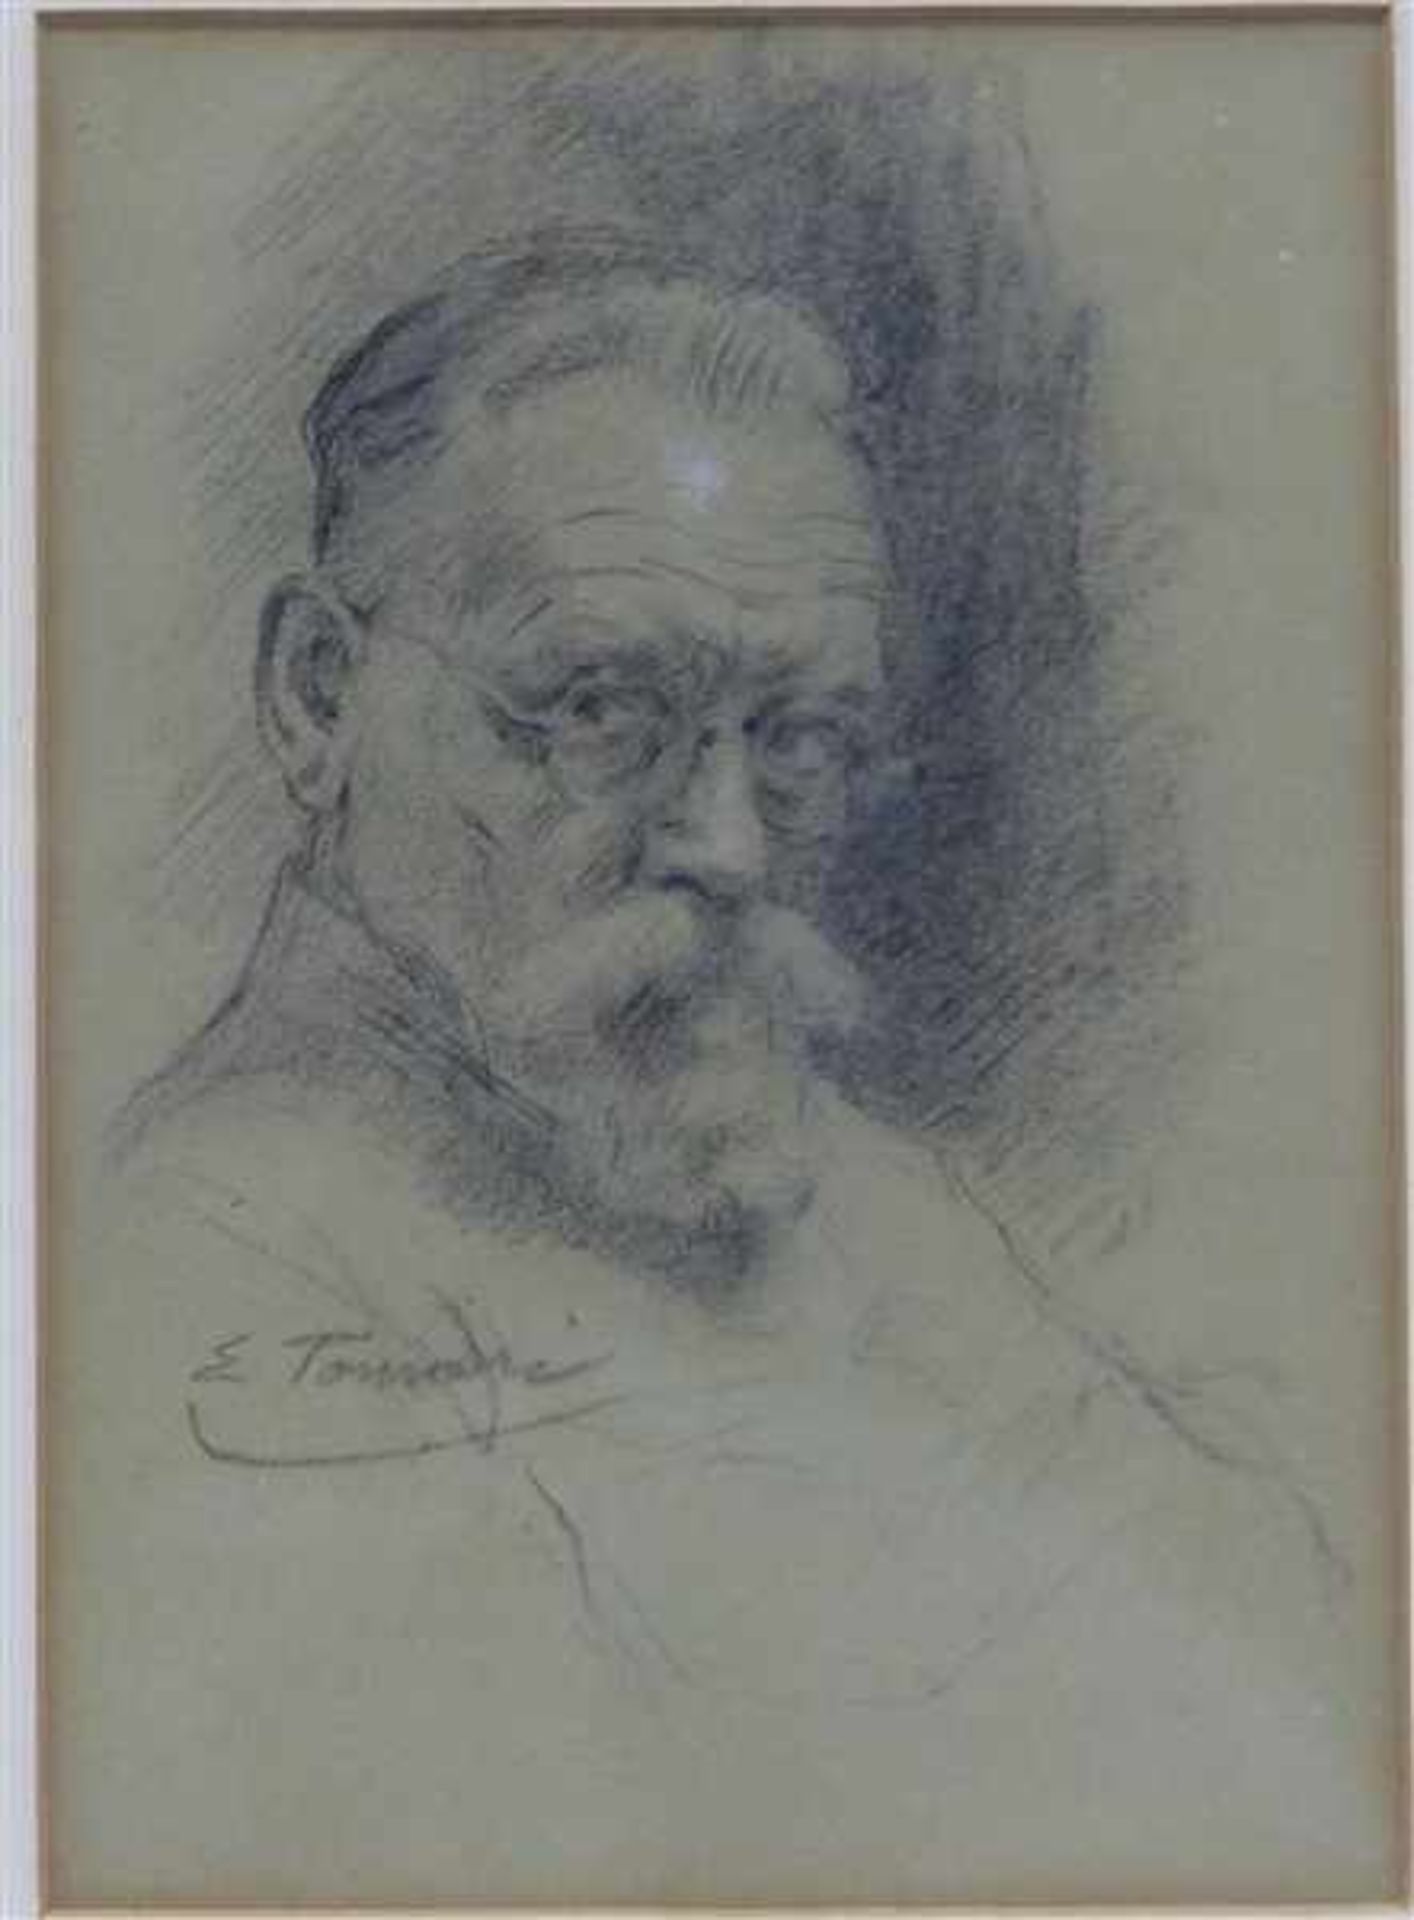 Tomasi, Eugenio1873 - 1969 München, Bleistiftzeichnung auf Papier, wohl Selbstporträt des Künstlers,